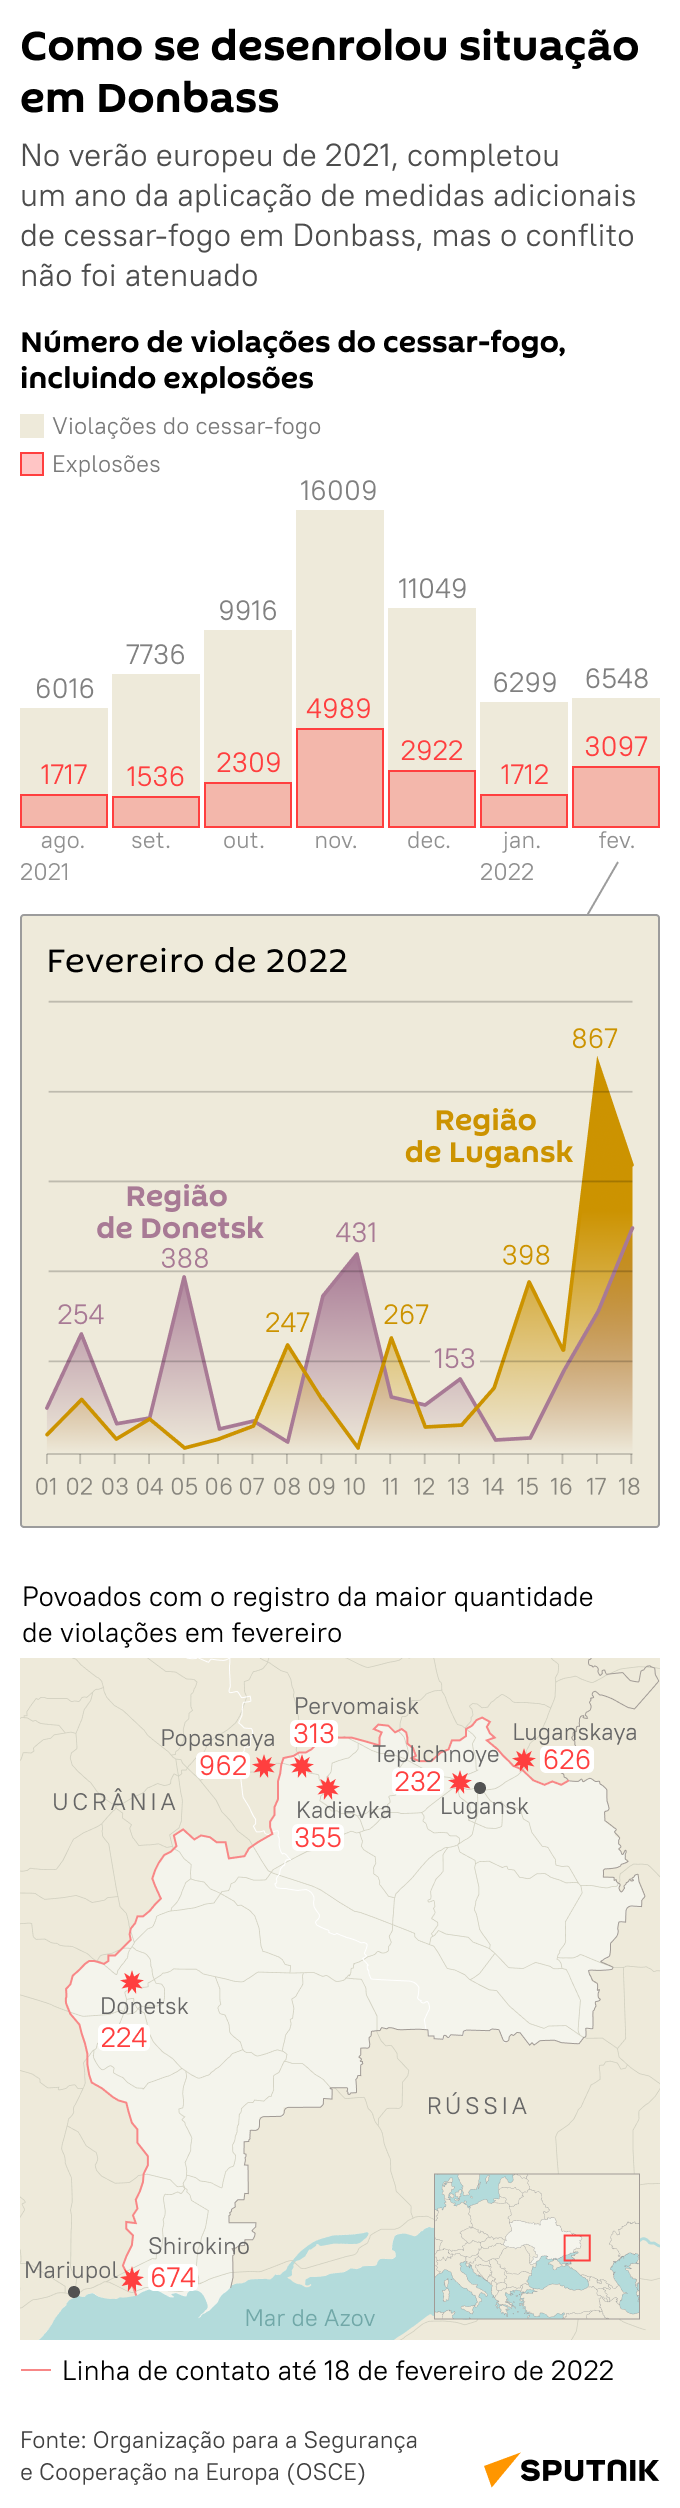 Desenvolvimento da situação em Donbass - Sputnik Brasil